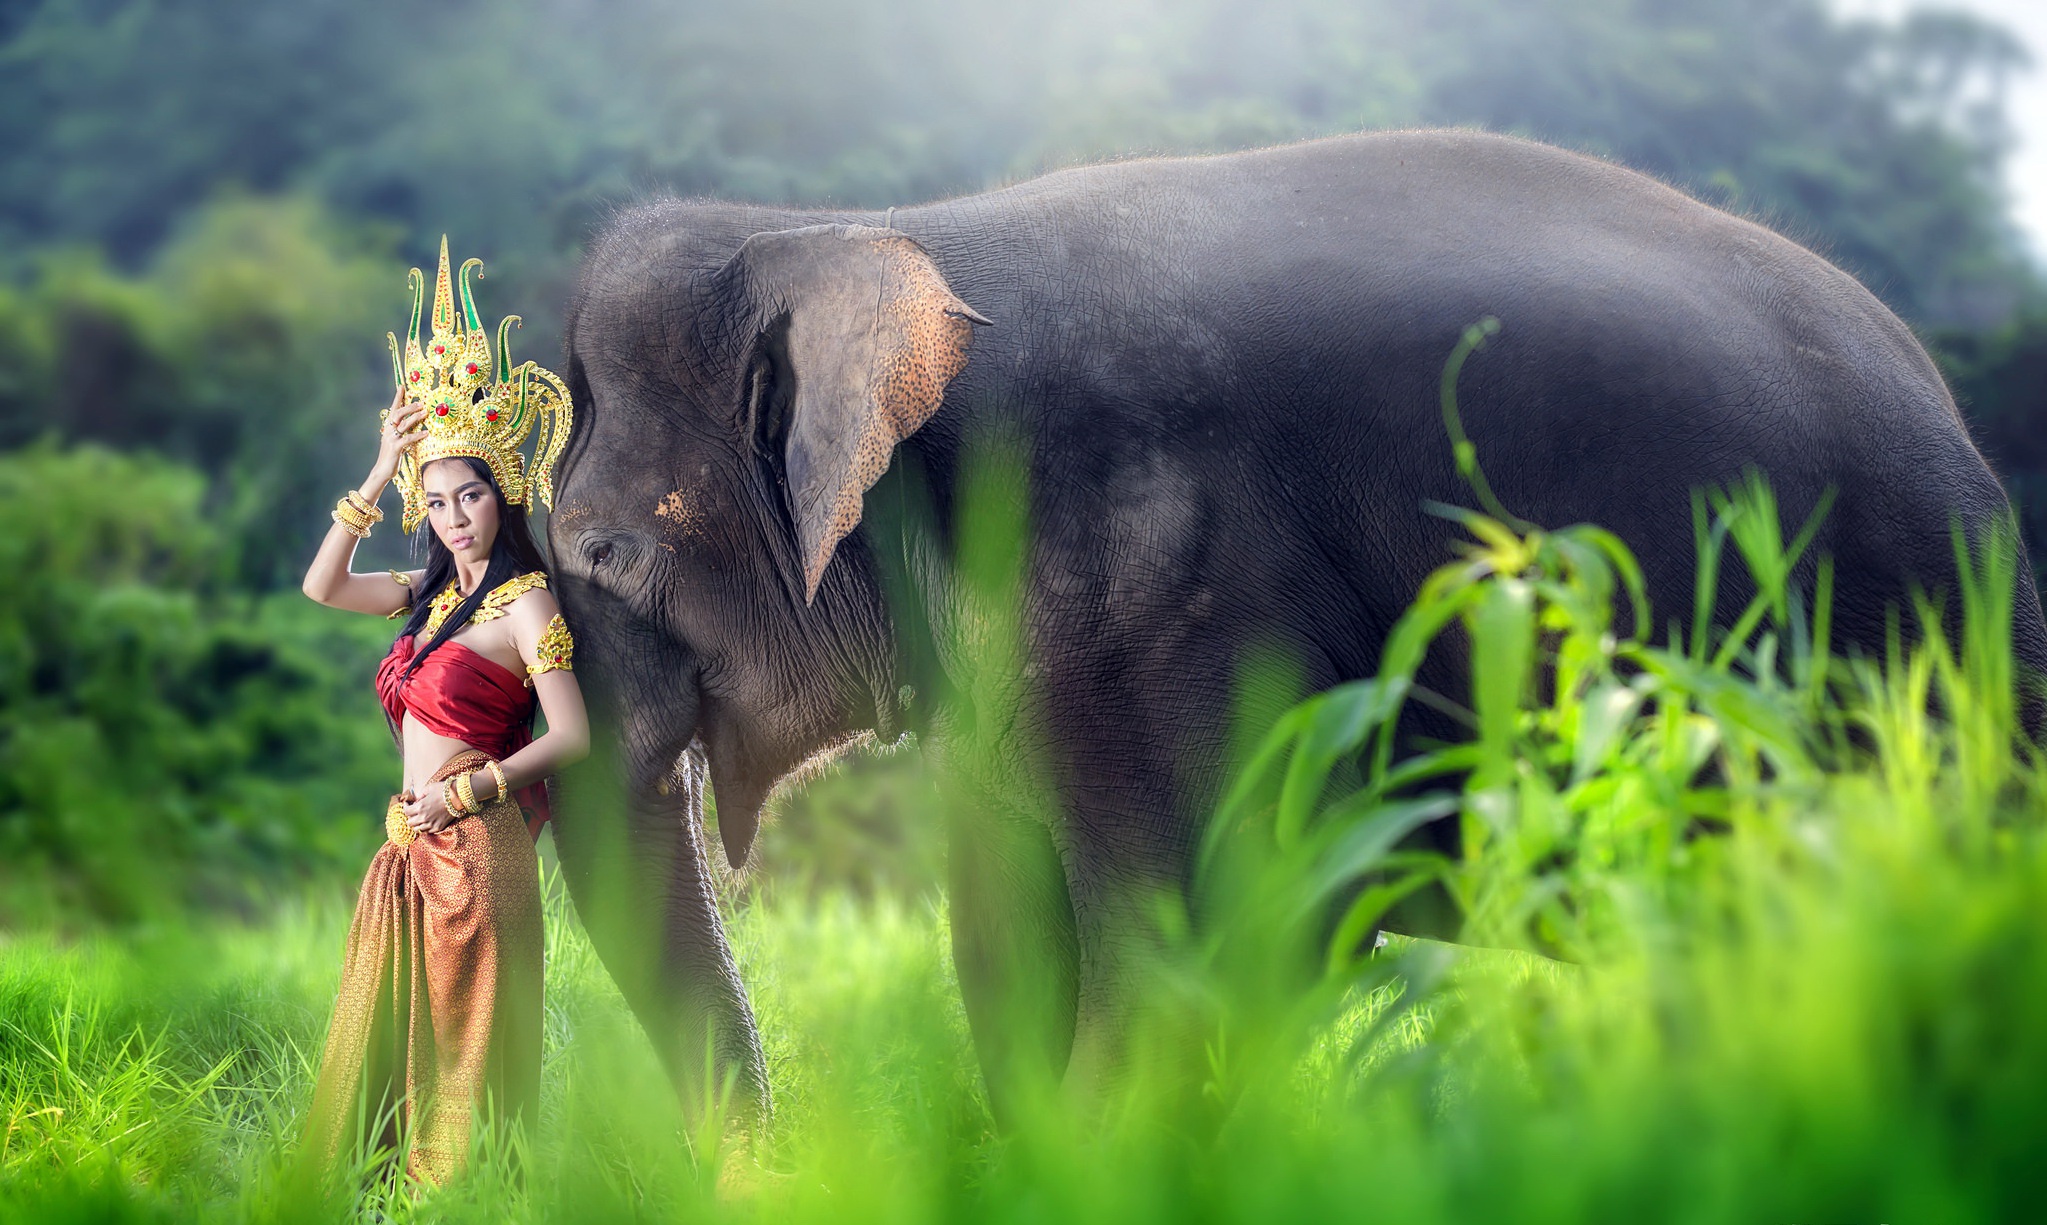 Model Traditional Costume Thai Elephant Brunette 2047x1225